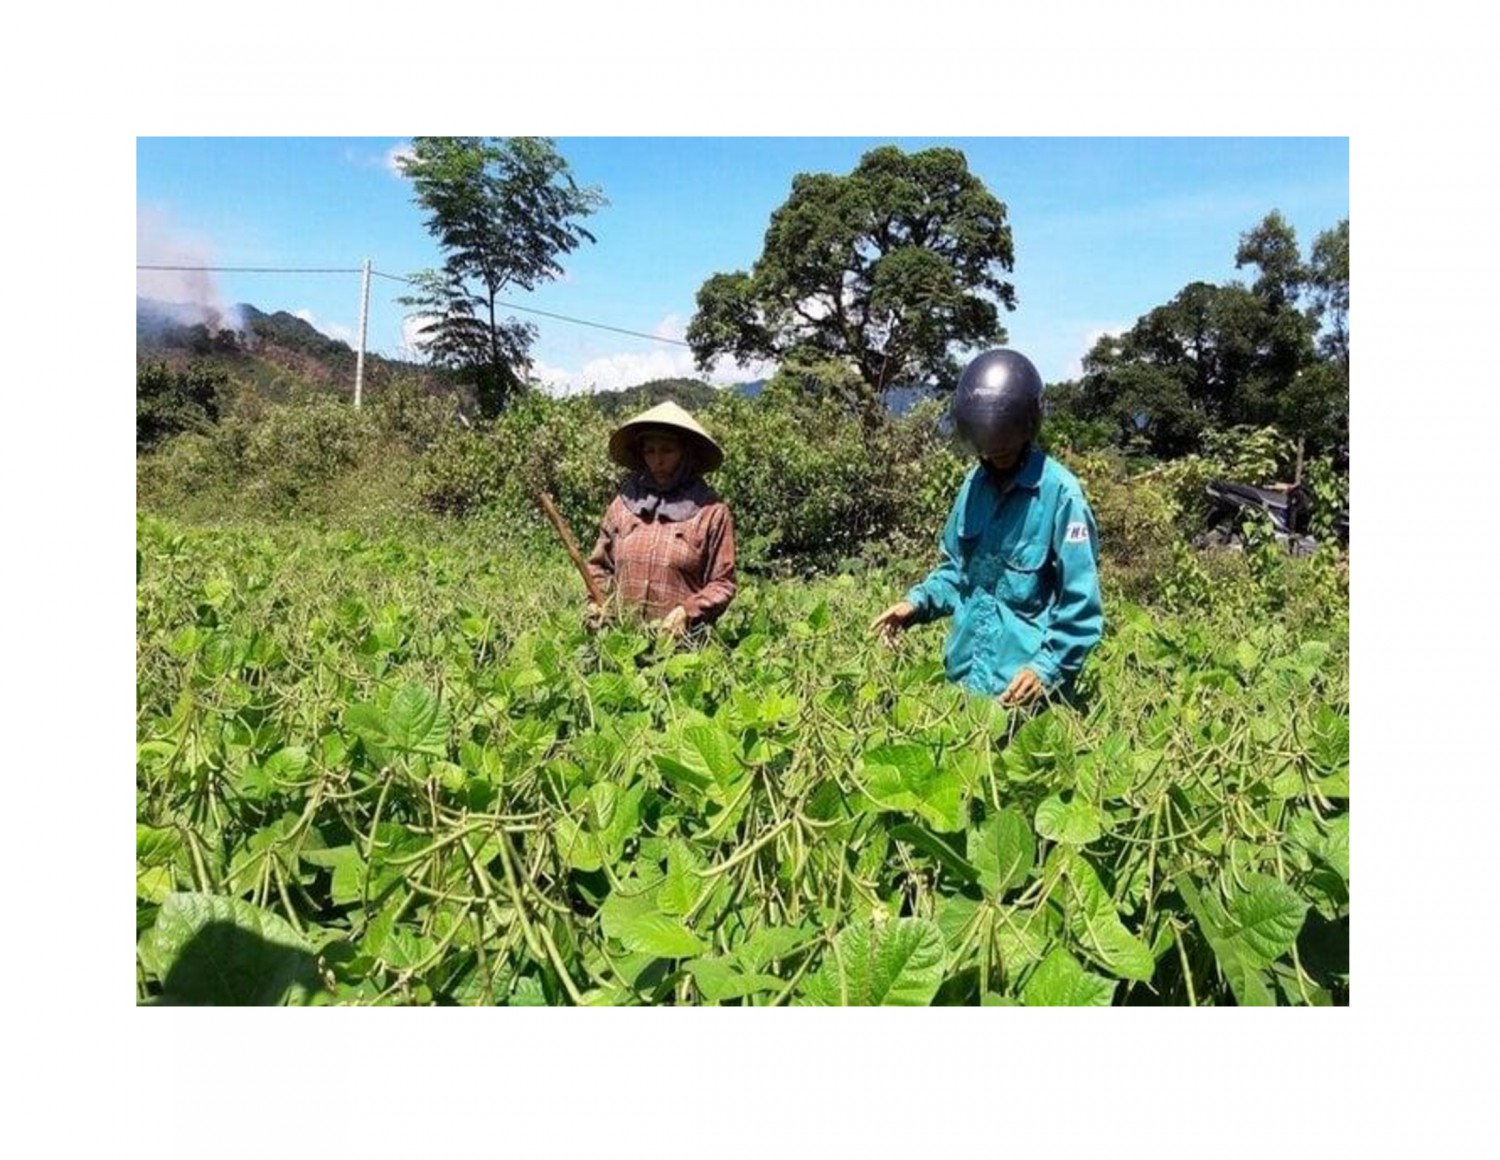 Cây đậu xanh được nhiều xã ở huyện Đakrông lựa chọn để trồng trên diện tích đất lúa kém hiệu quả.